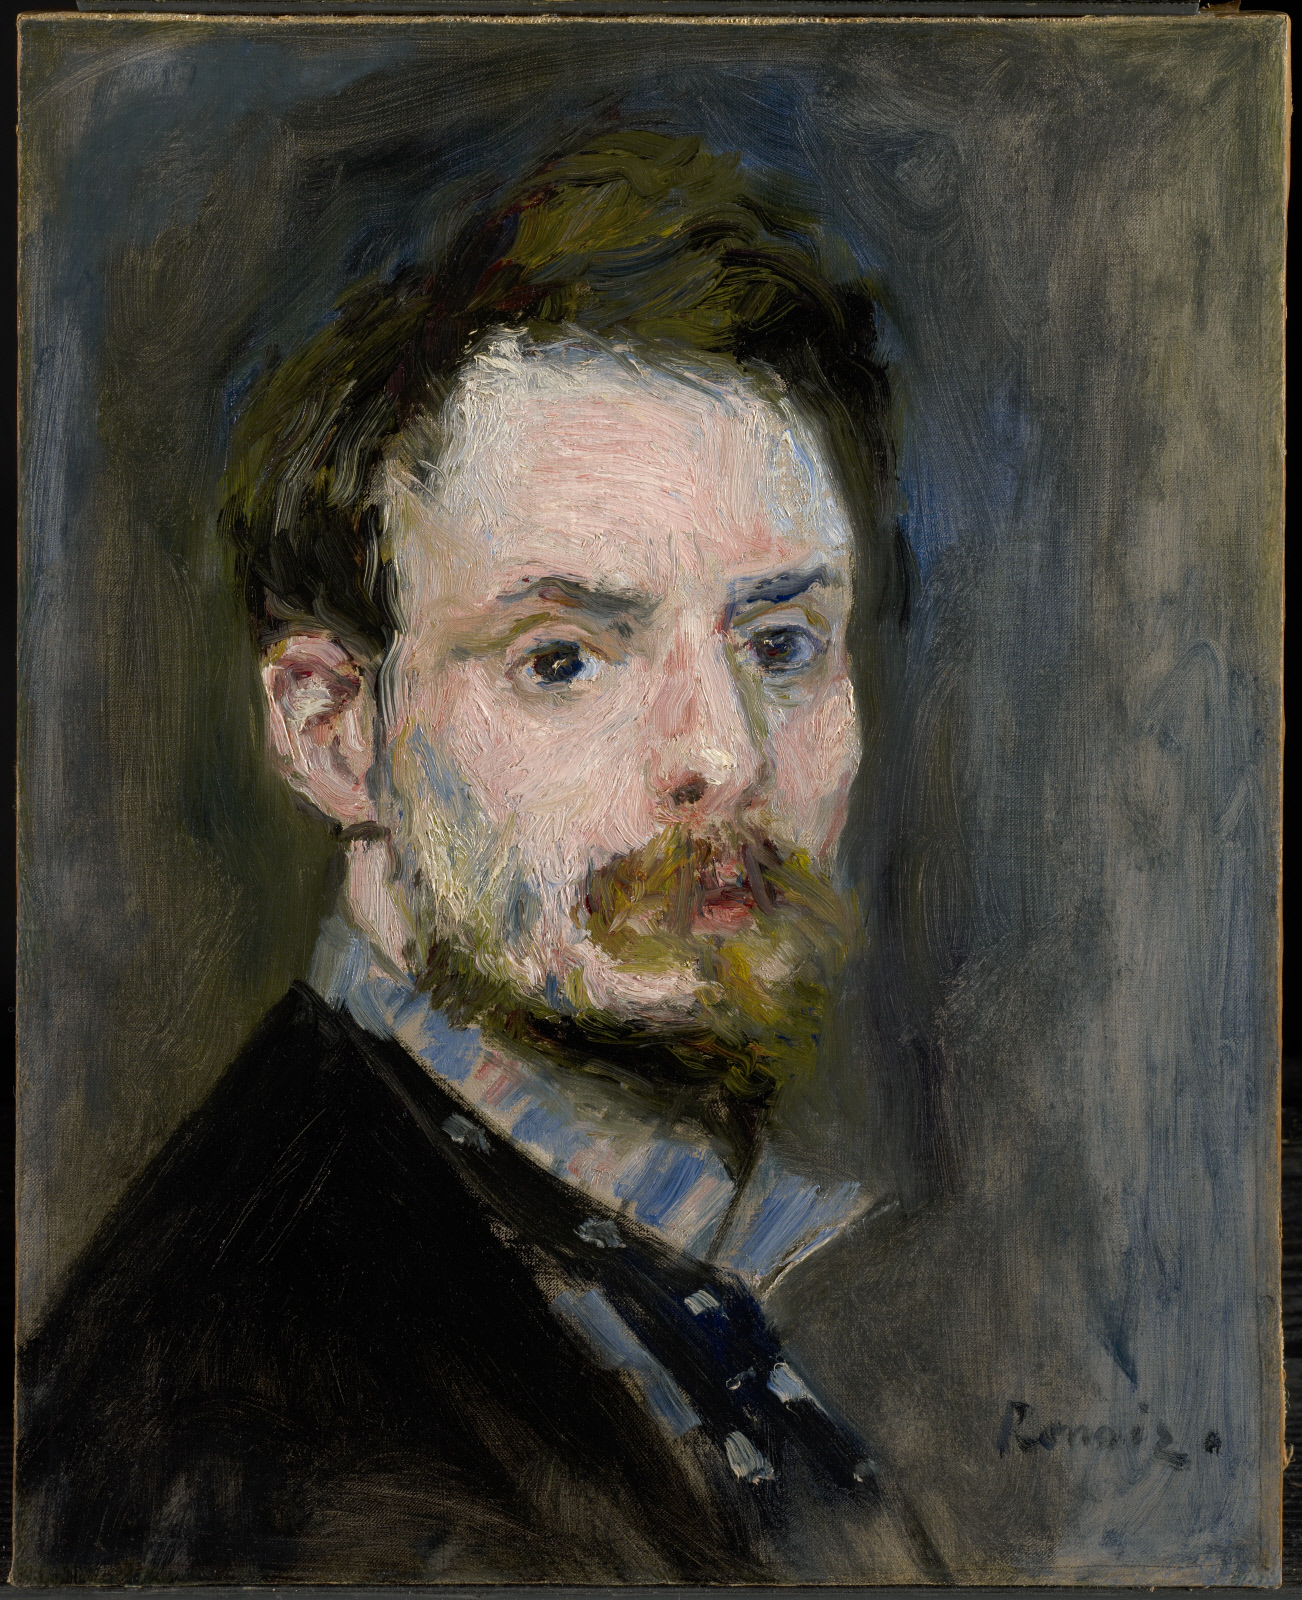 Self-Portrait by Pierre-Auguste Renoir - c. 1875 - 39.1 x 31.6 cm The Clark